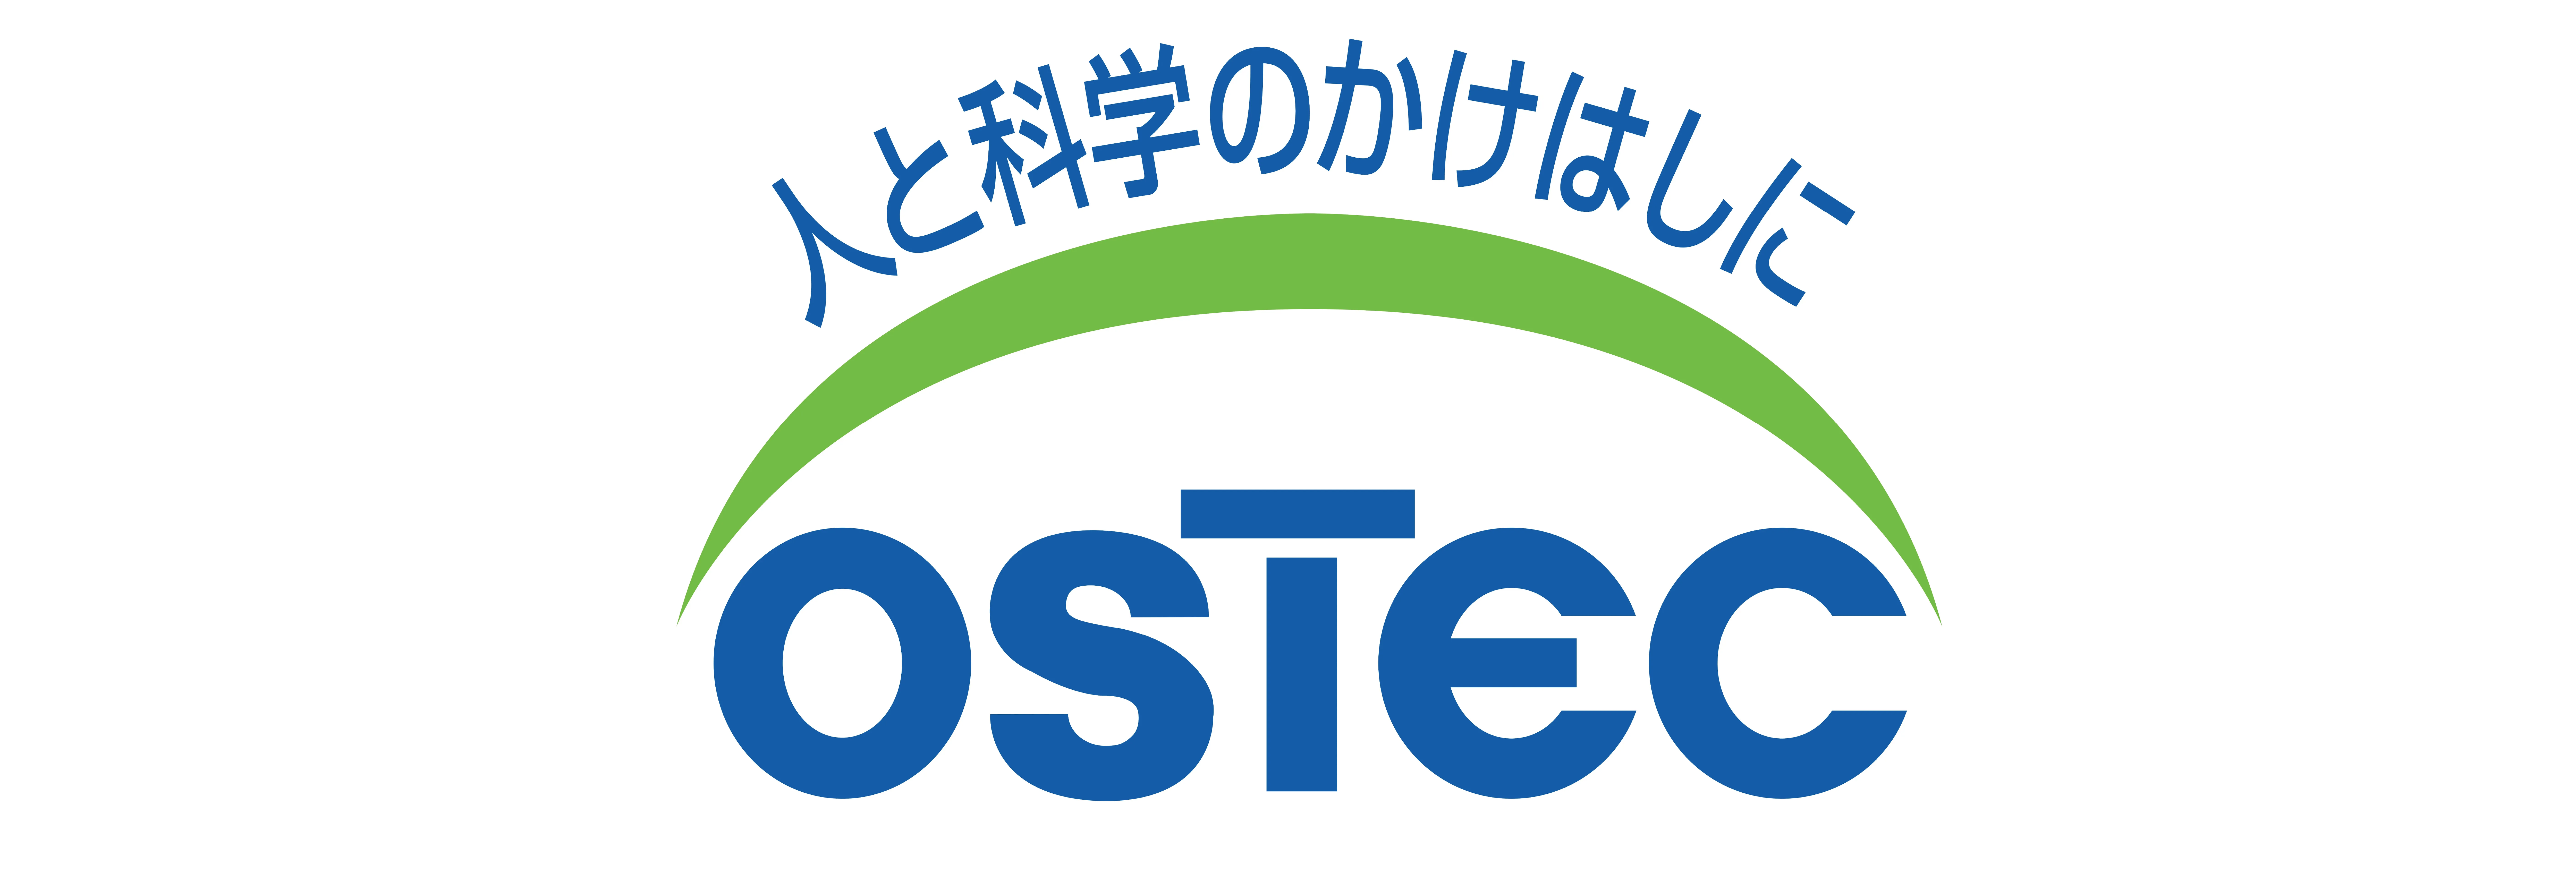 OSTEC